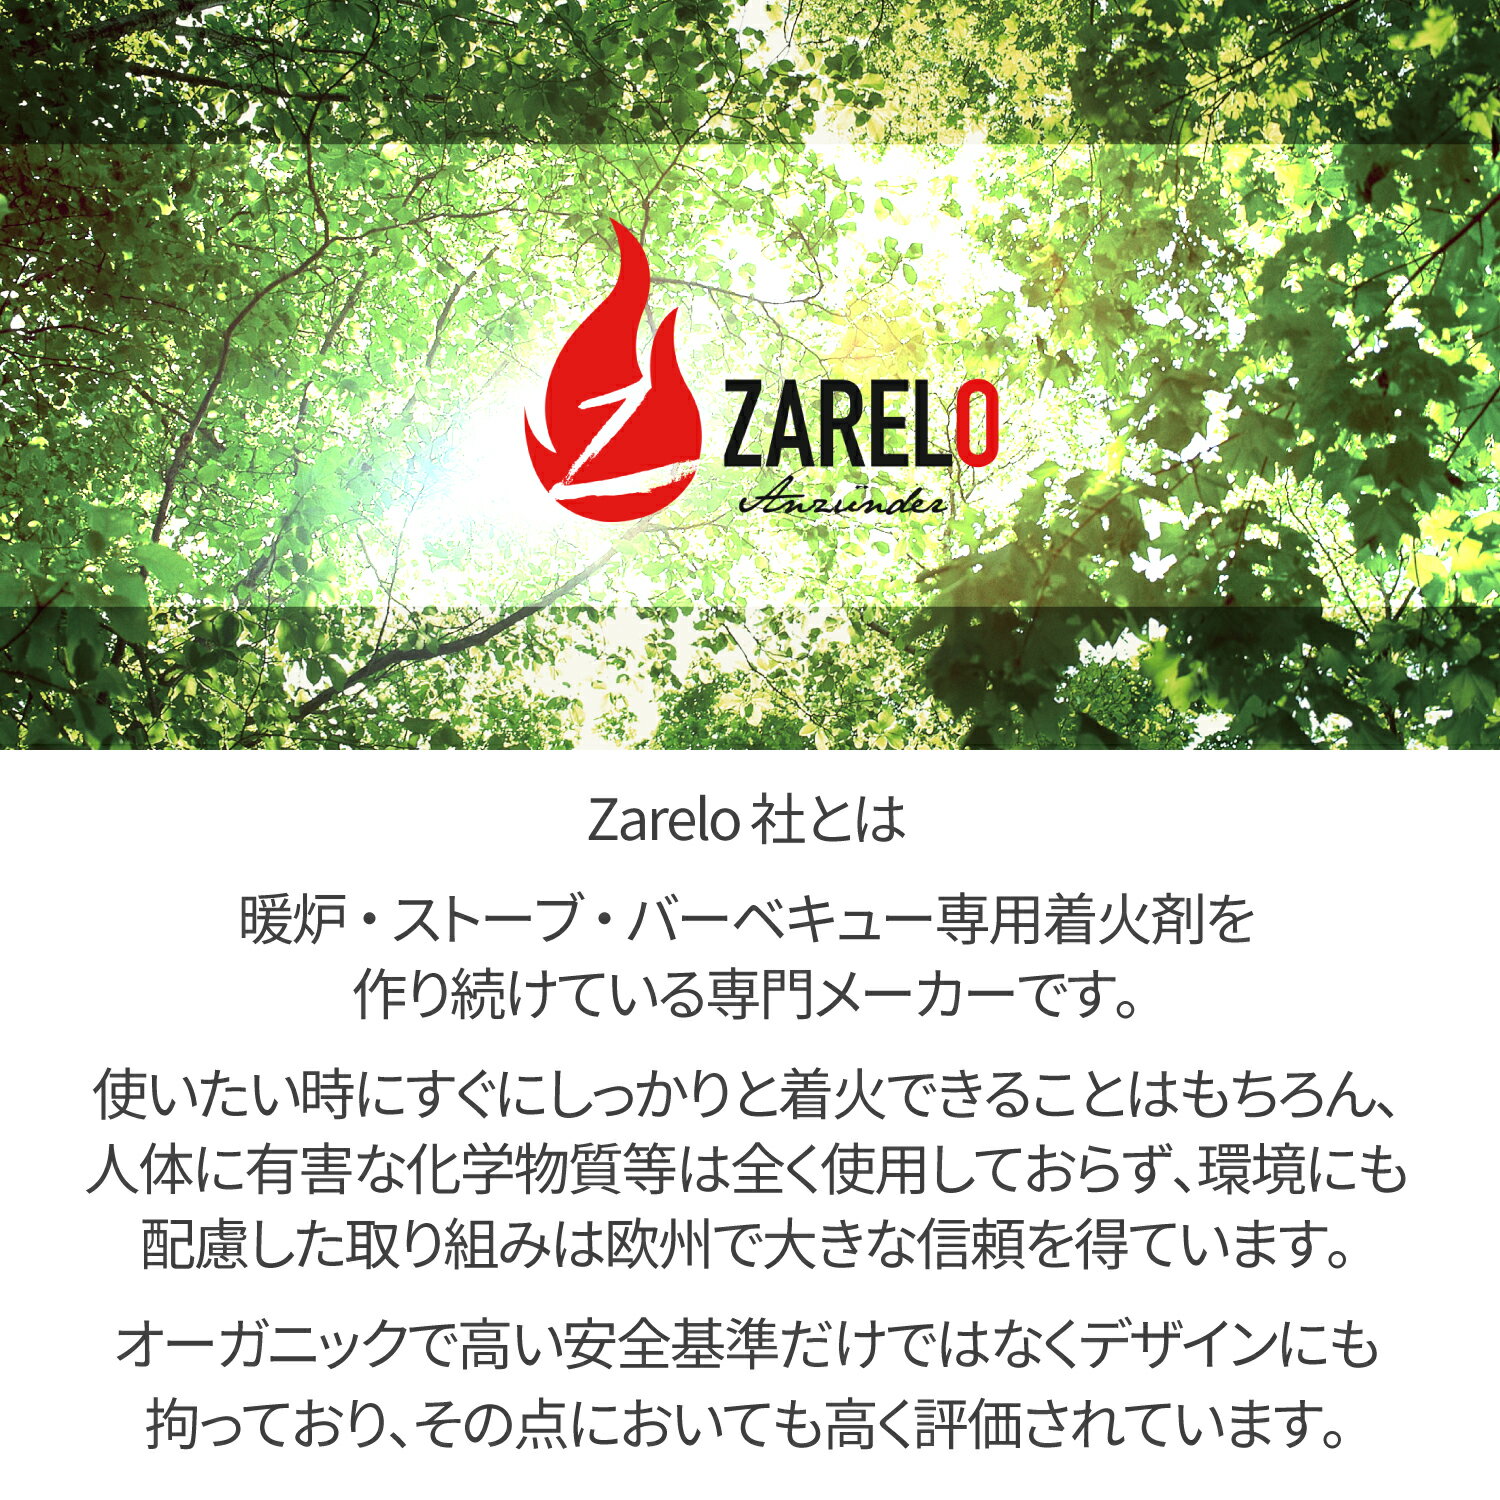 【あす楽対応】ZARELO(ザレロ) 着火剤 NATURAL EDITION オーガニック エコ 永年保管可能 化学物質なし 簡単 キャンプ用品 アウトドア バーベキュー 薪ストーブ ファイヤースティック ファイヤースターター